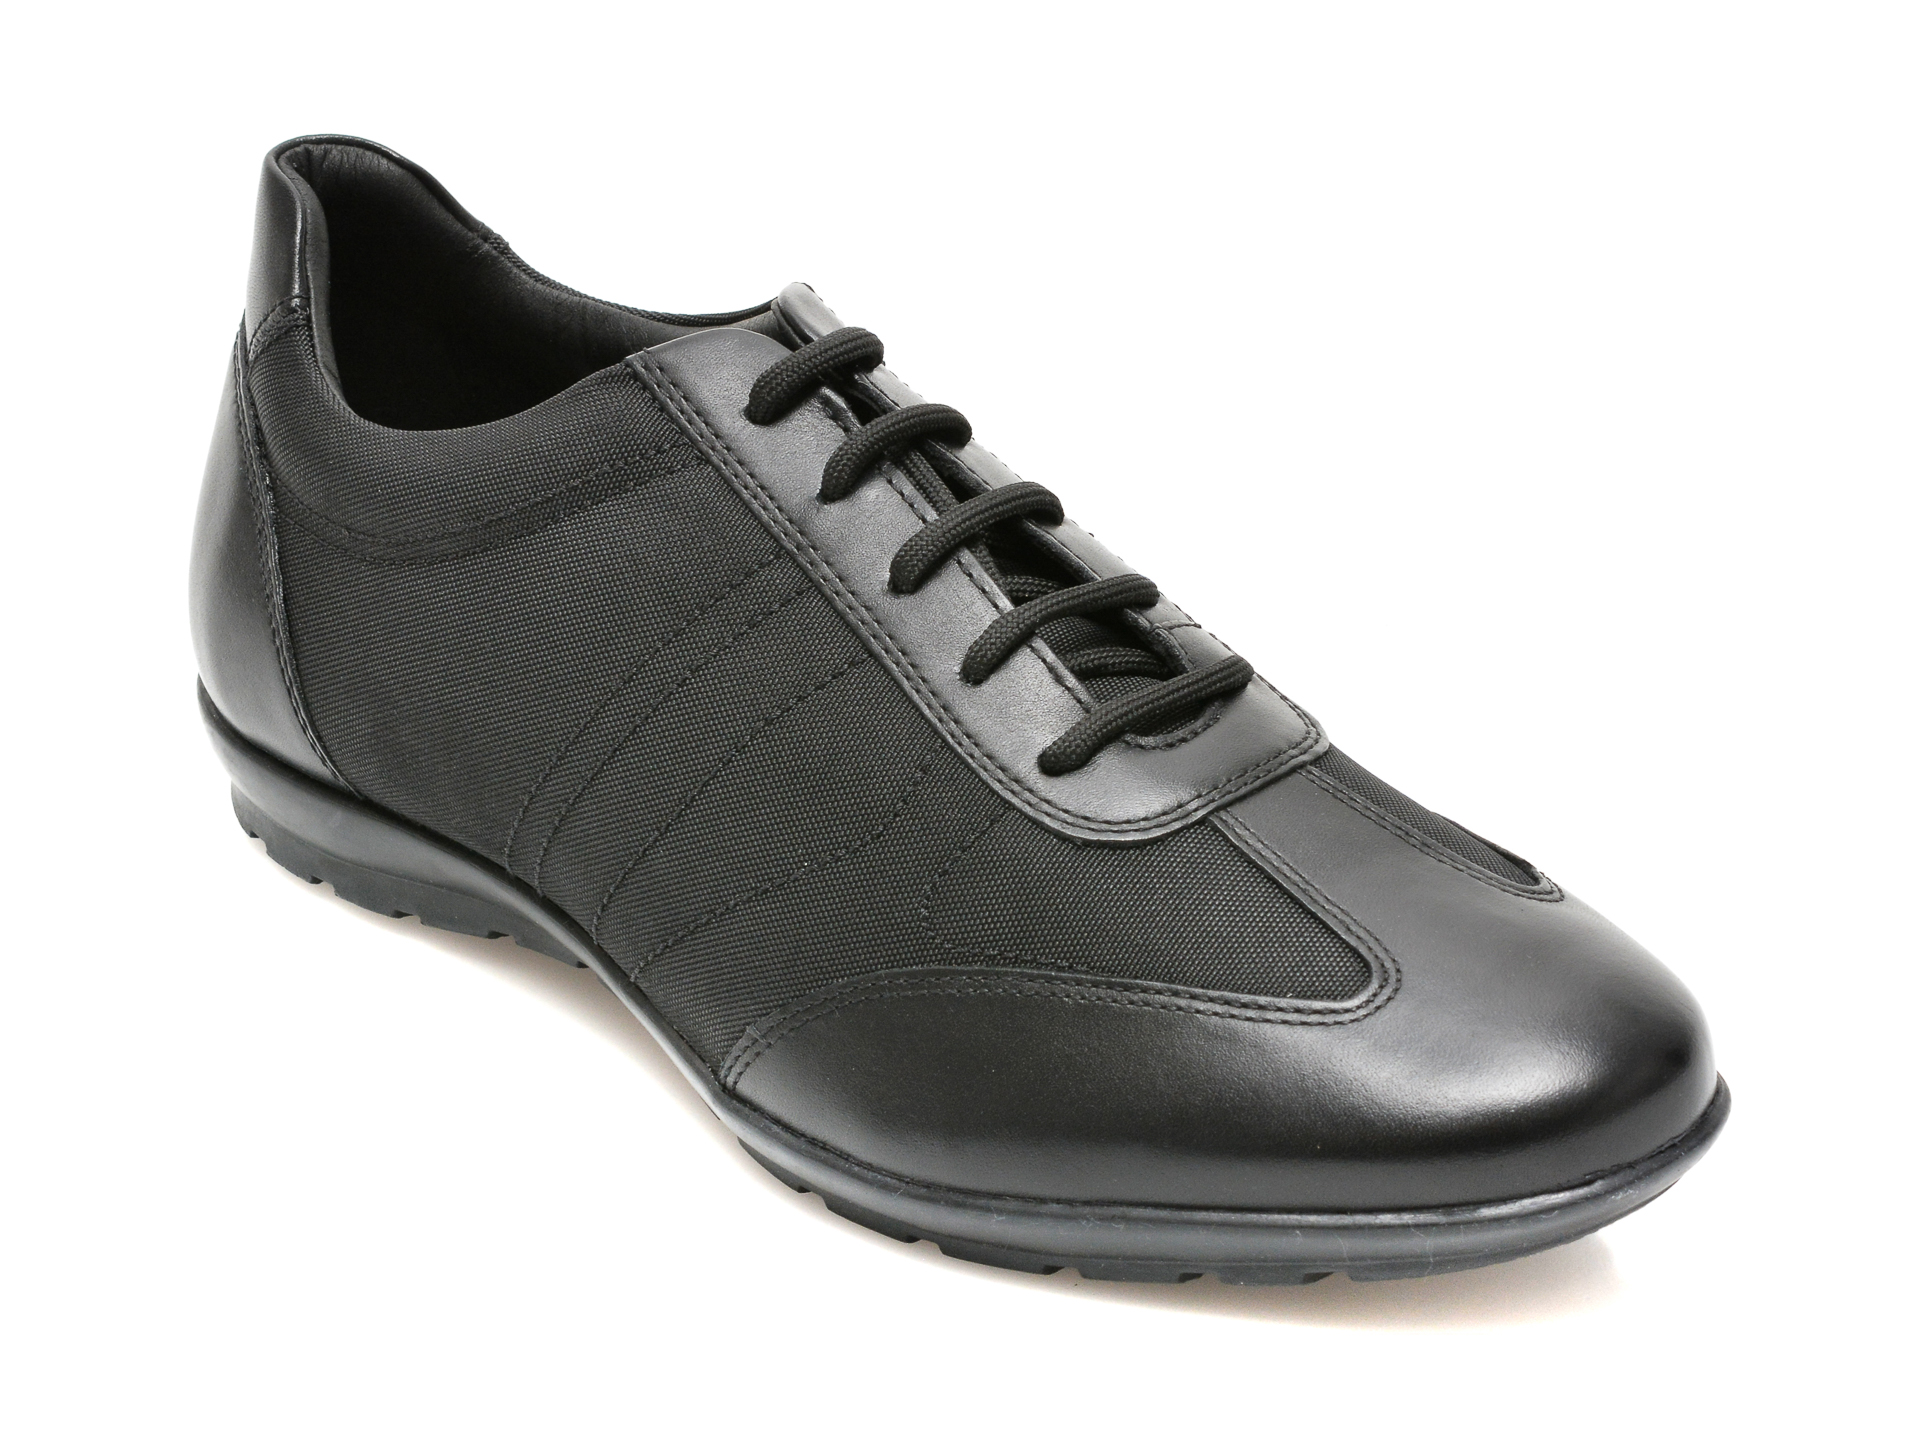 Pantofi GEOX negri, U74A5B, din material textil Geox